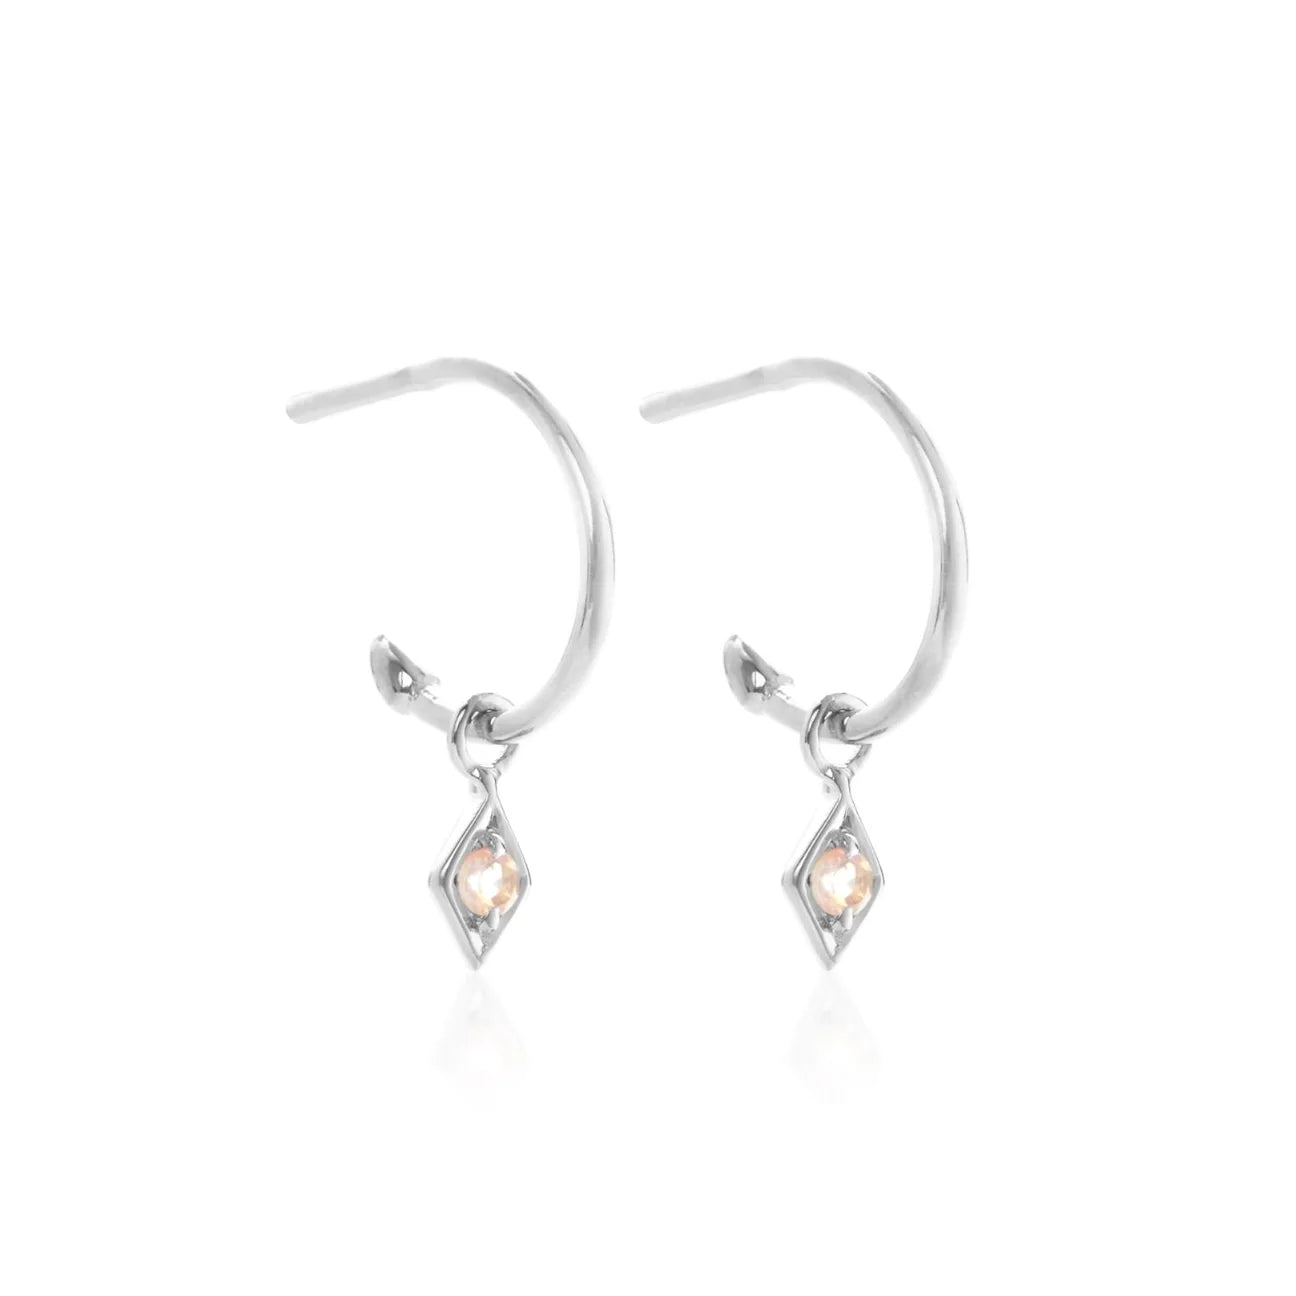 Rose quartz gemstone hoop earrings